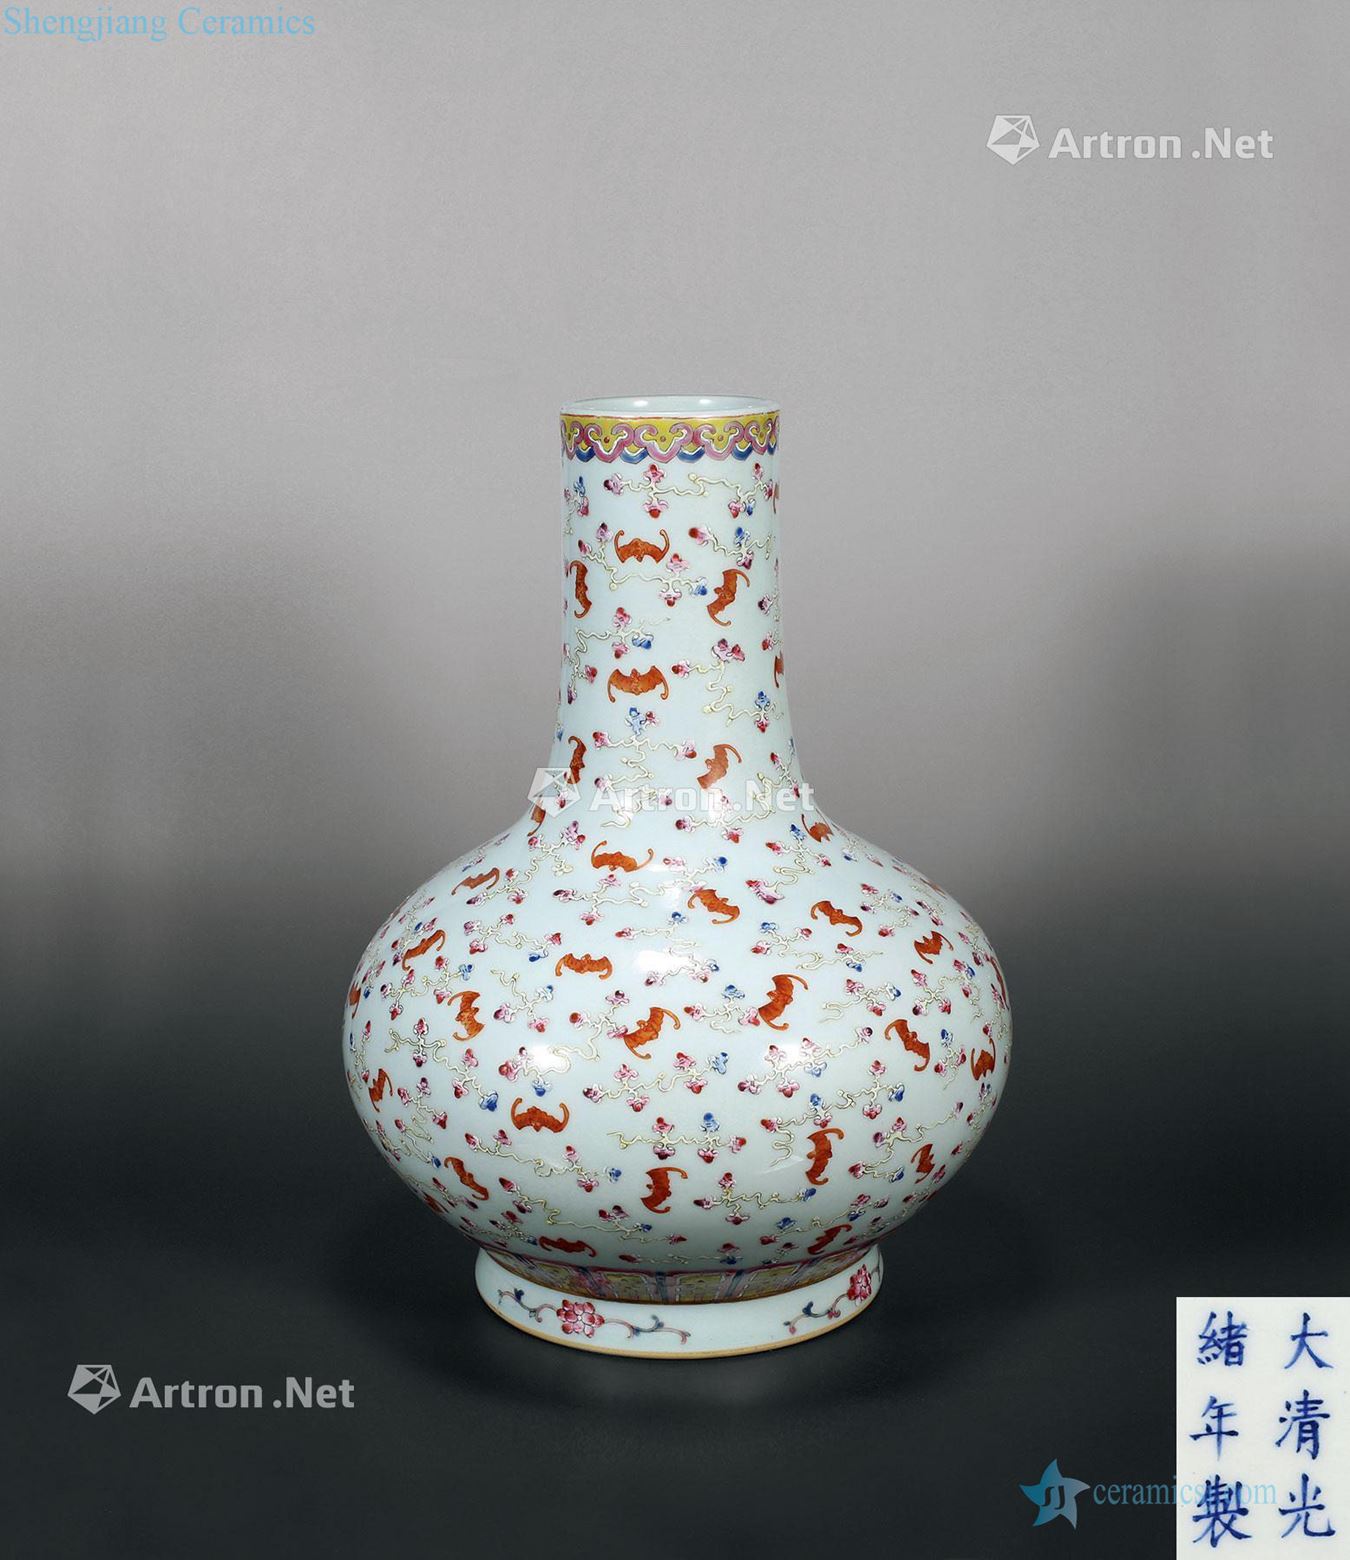 "Qing guangxu reign of qing emperor guangxu years" pastel moire buford bottle